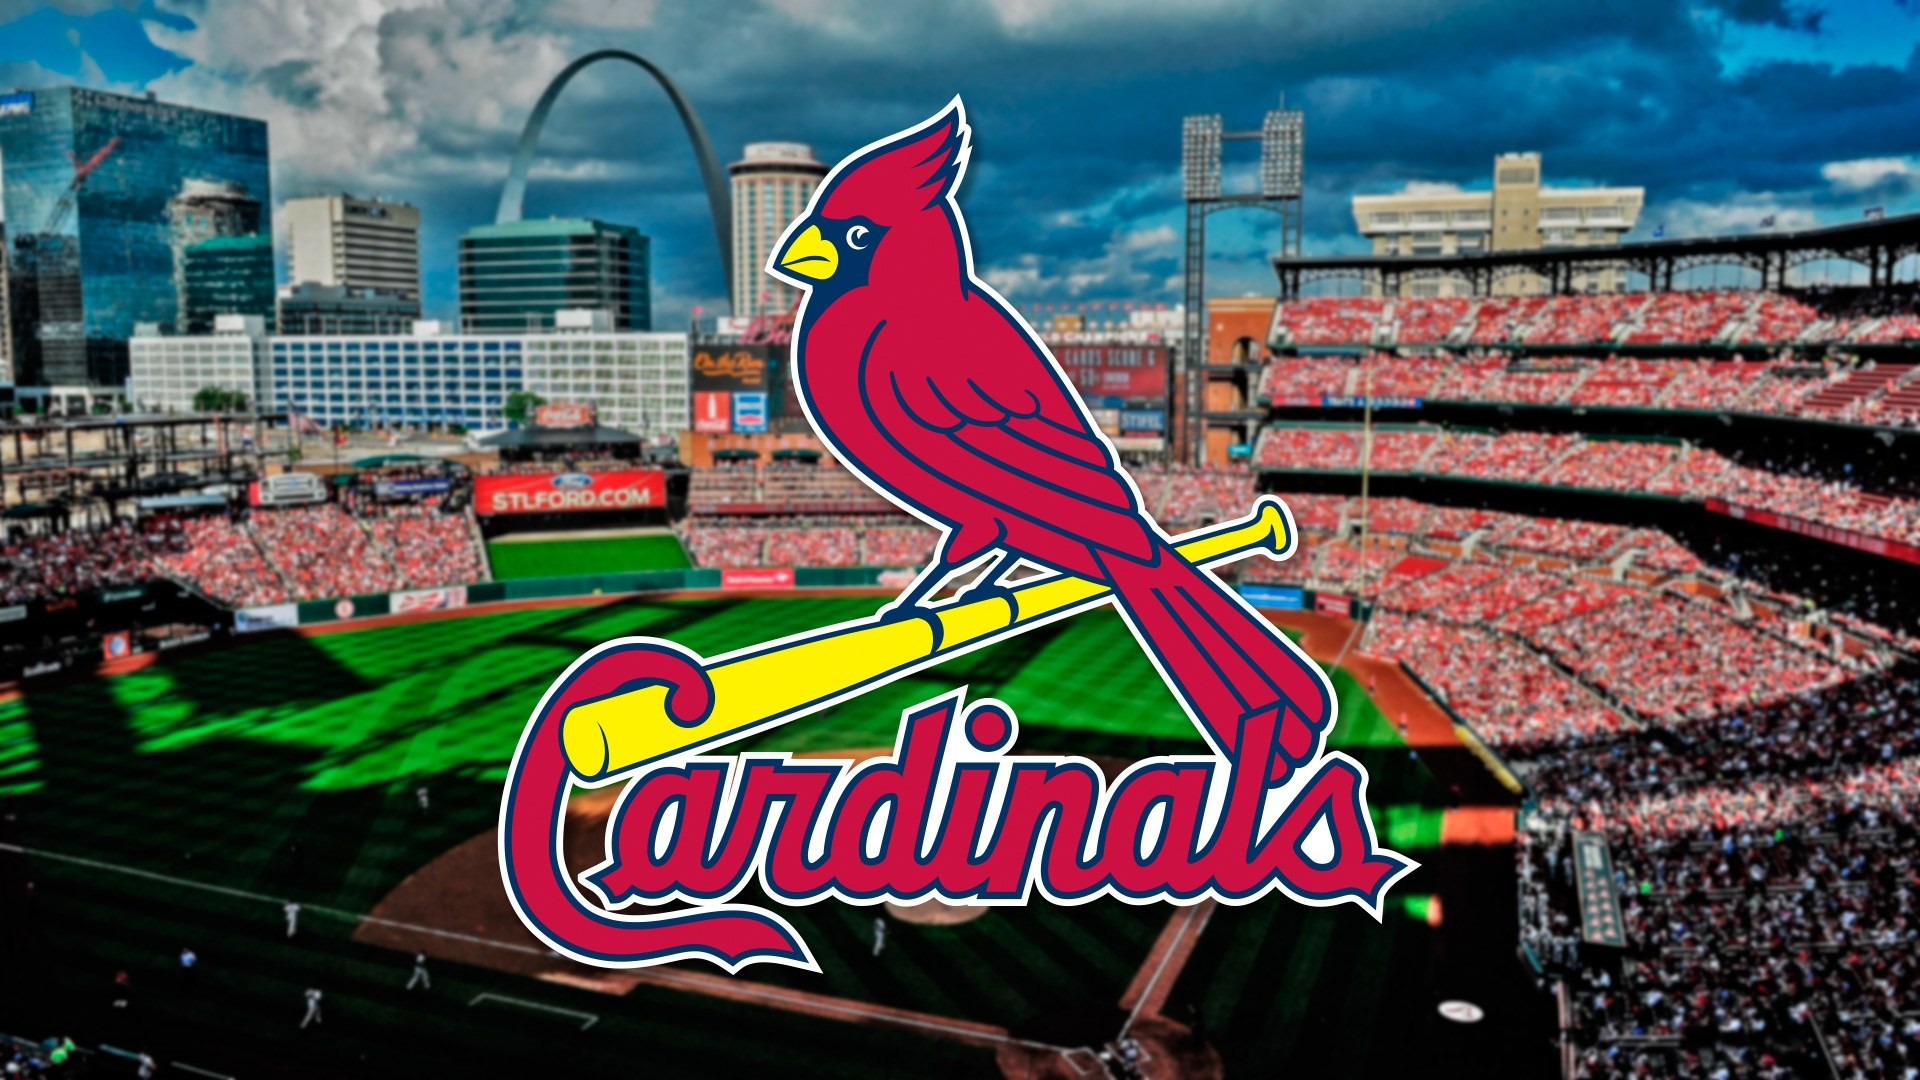 St Louis Cardinals Background Wallpaper Hd